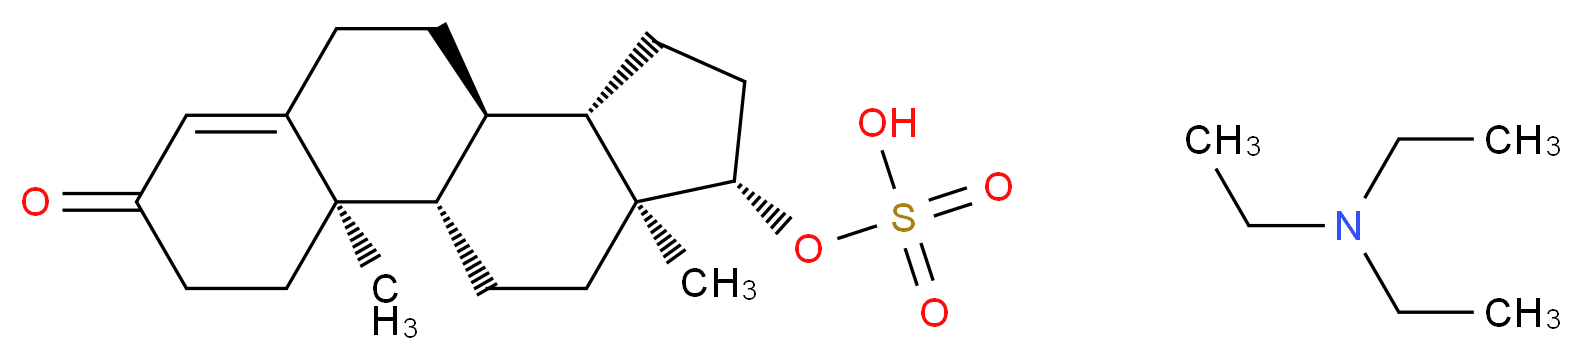 Testosterone Sulfate Triethylamine Salt_Molecular_structure_CAS_20997-99-3)